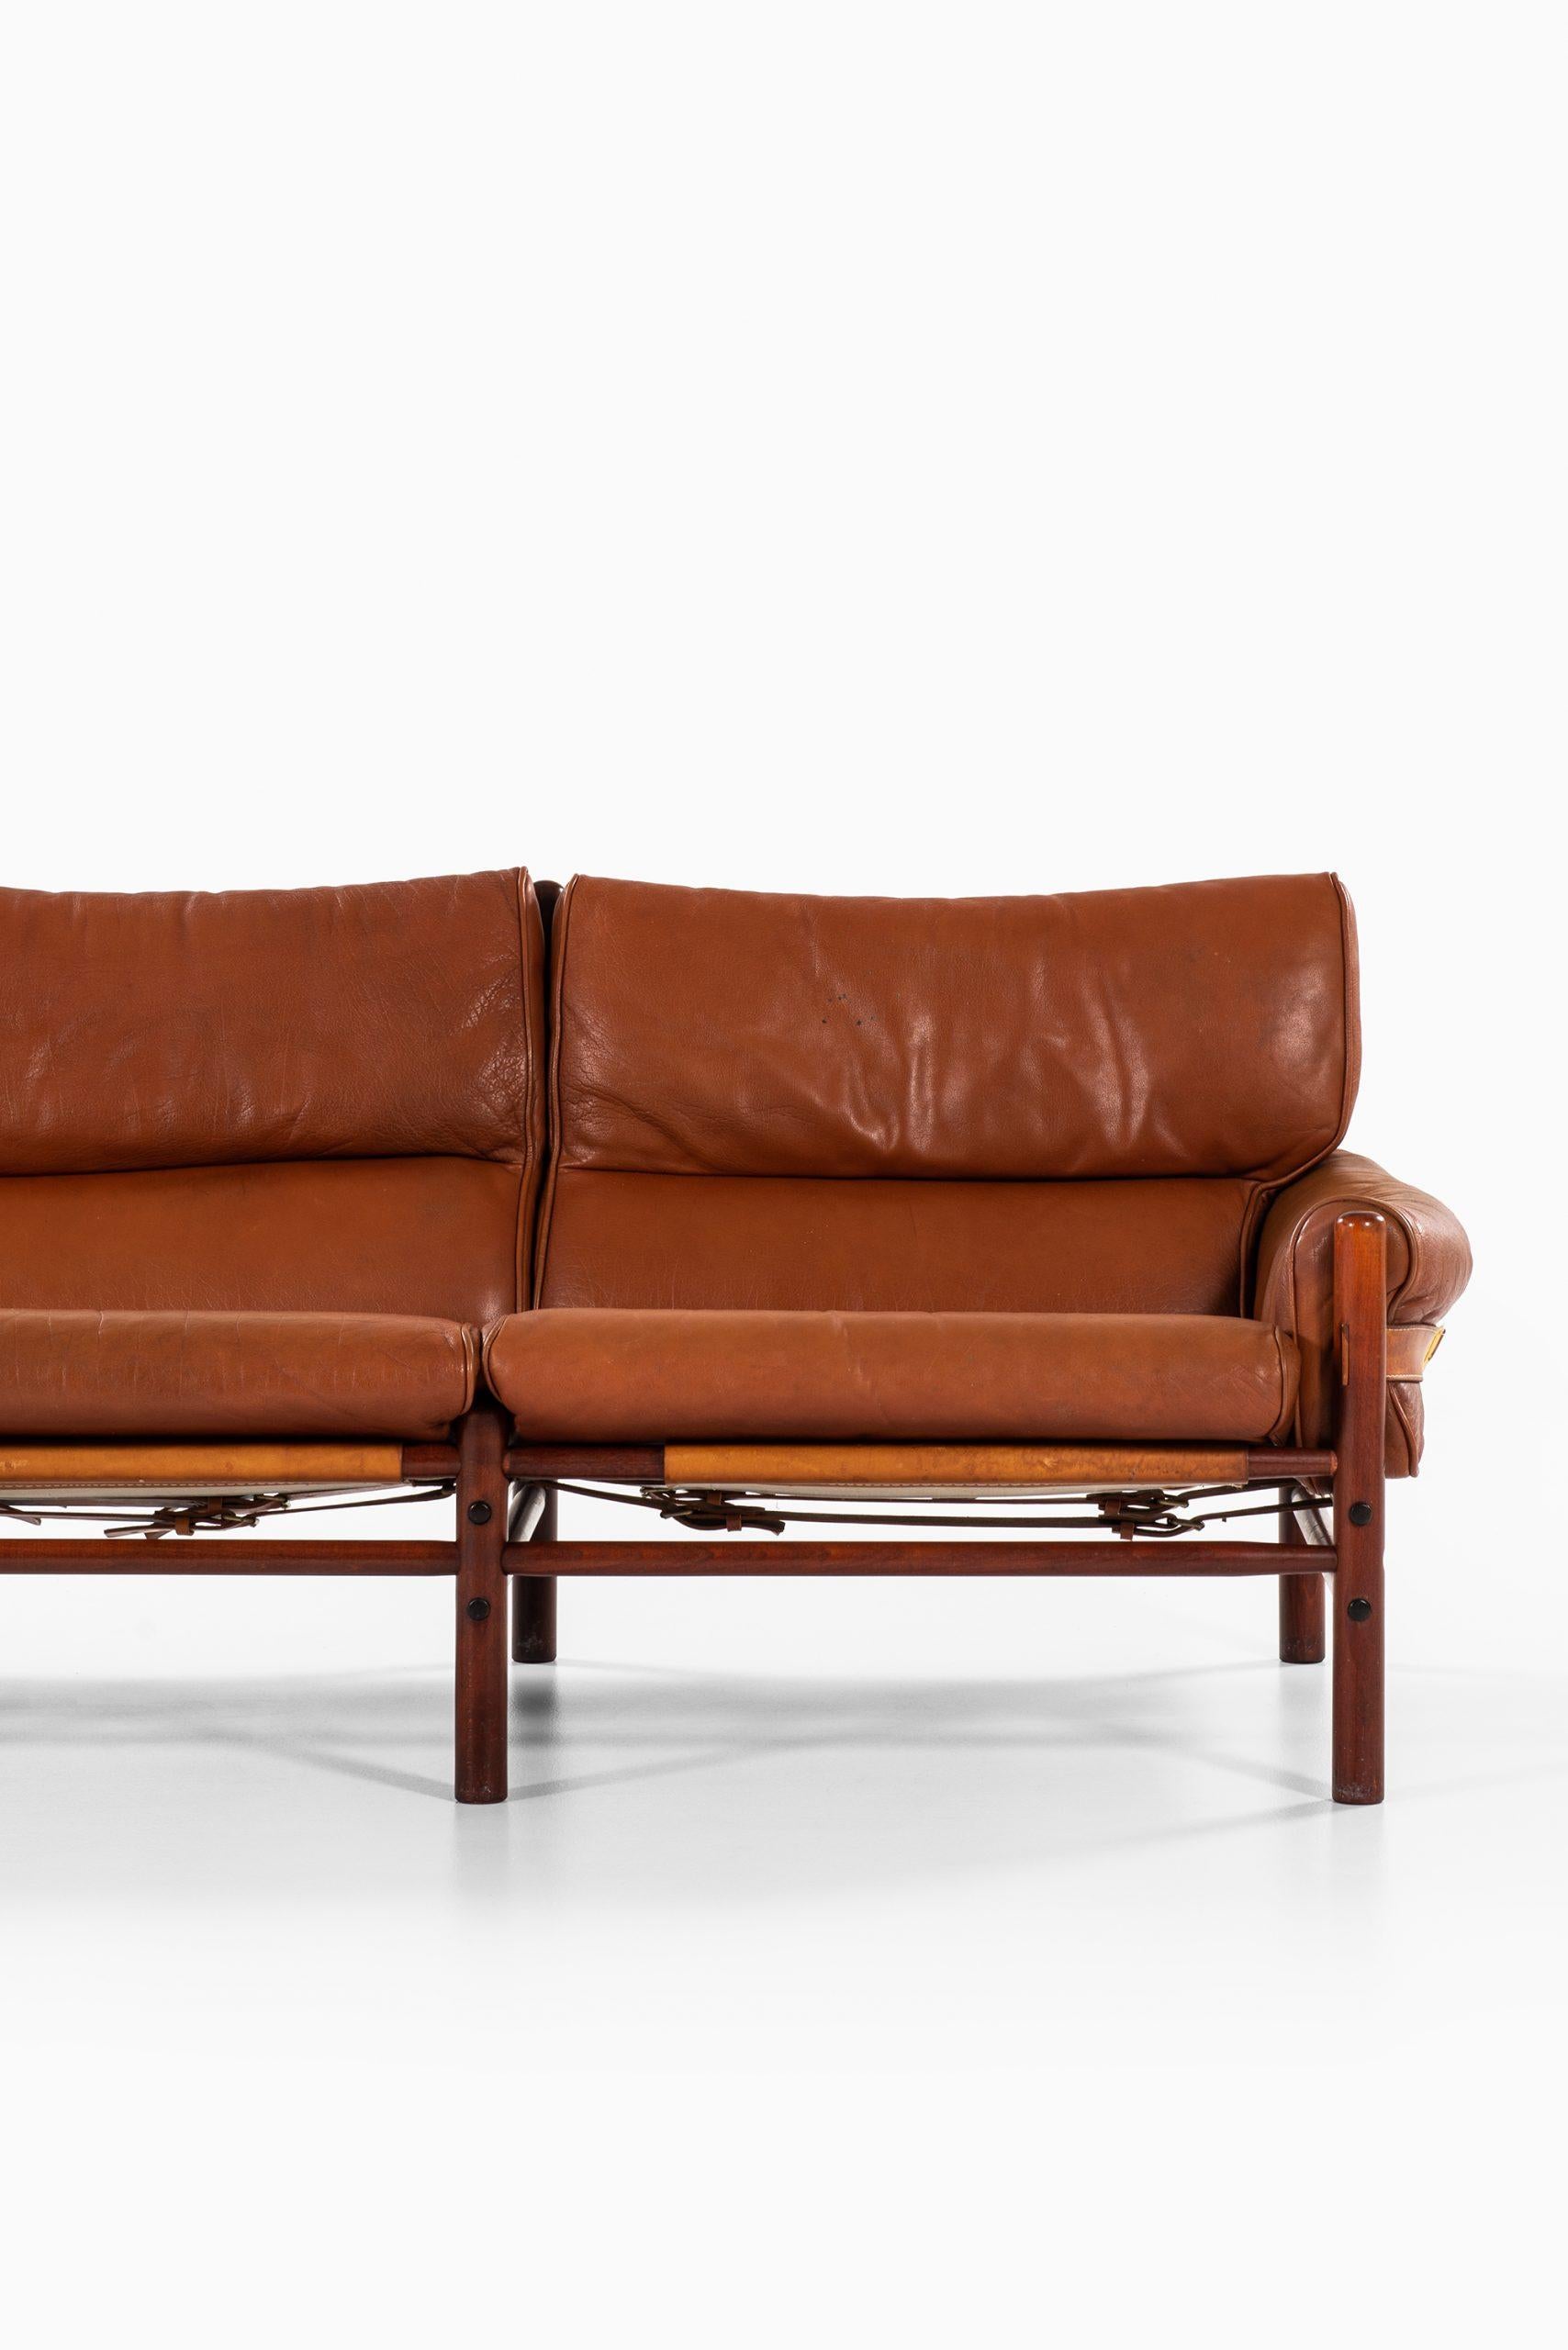 3-sitziges Sofa Modell Kontiki, entworfen von Arne Norell. Produziert von Arne Norell AB in Aneby, Schweden.